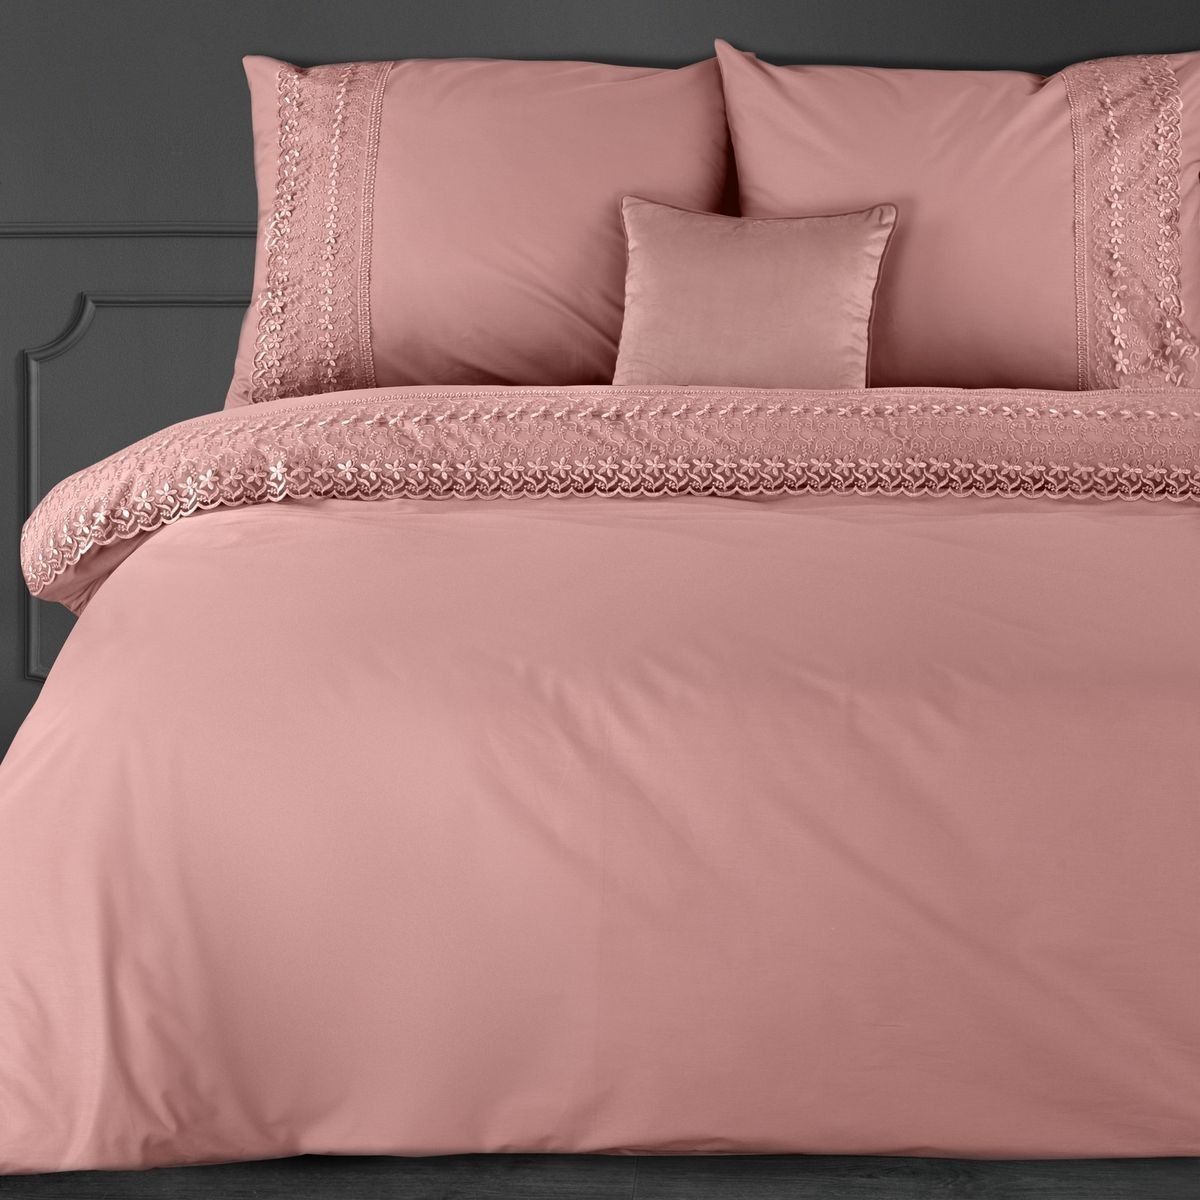 DomTextilu Romantické ružové bavlnené posteľné obliečky s francúzkou čipkou 3 časti: 1ks 200x220 + 2ks 70x80 Ružová 3 časti: 1ks 200x220 + 2ks 70x80 44860-209034